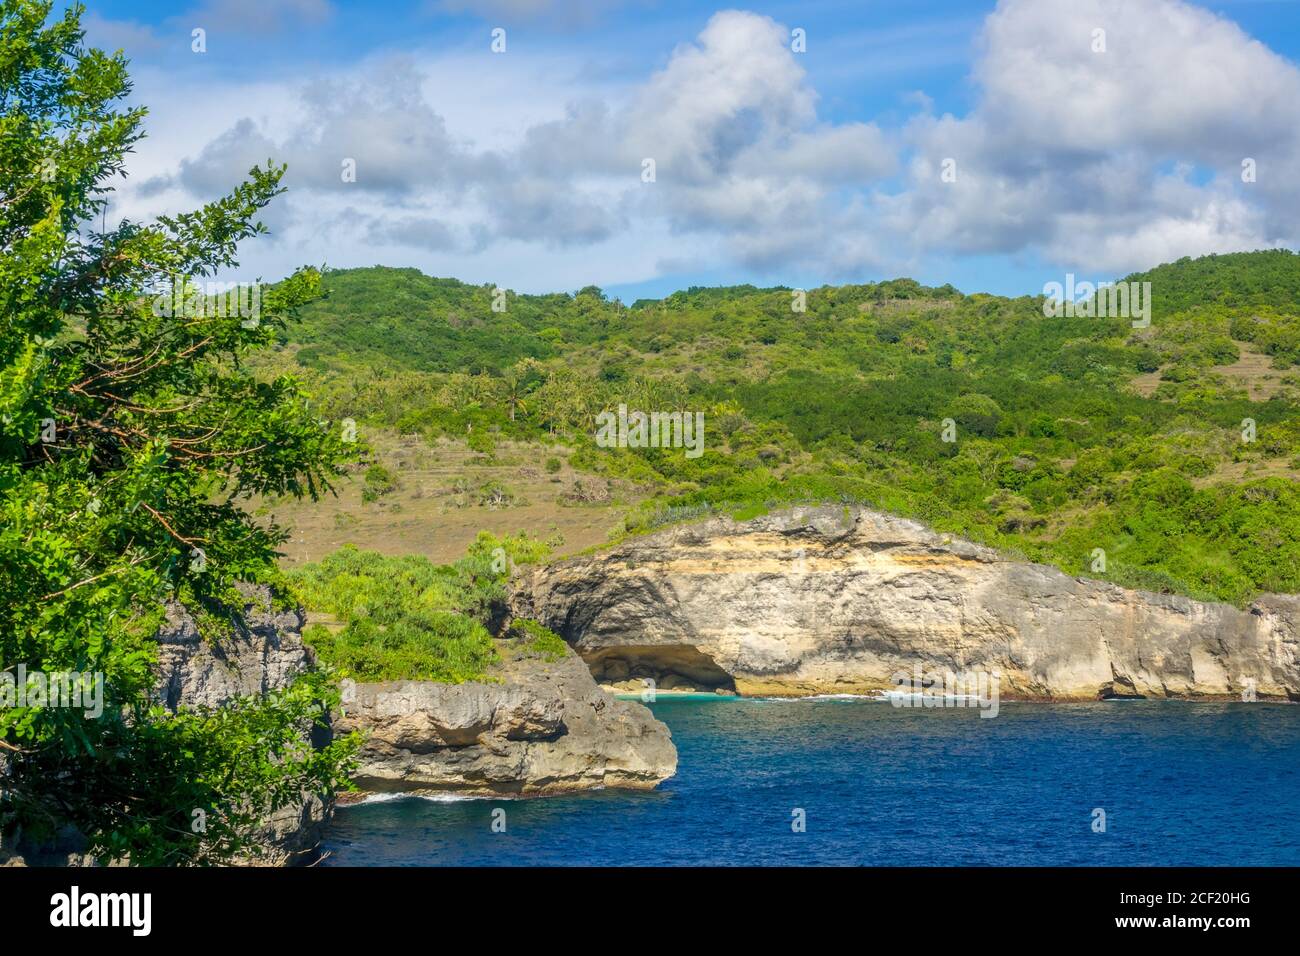 Costa tropicale rocciosa in giornata di sole. Nuvole nel cielo blu. Palme e vegetazione verde. Foto Stock